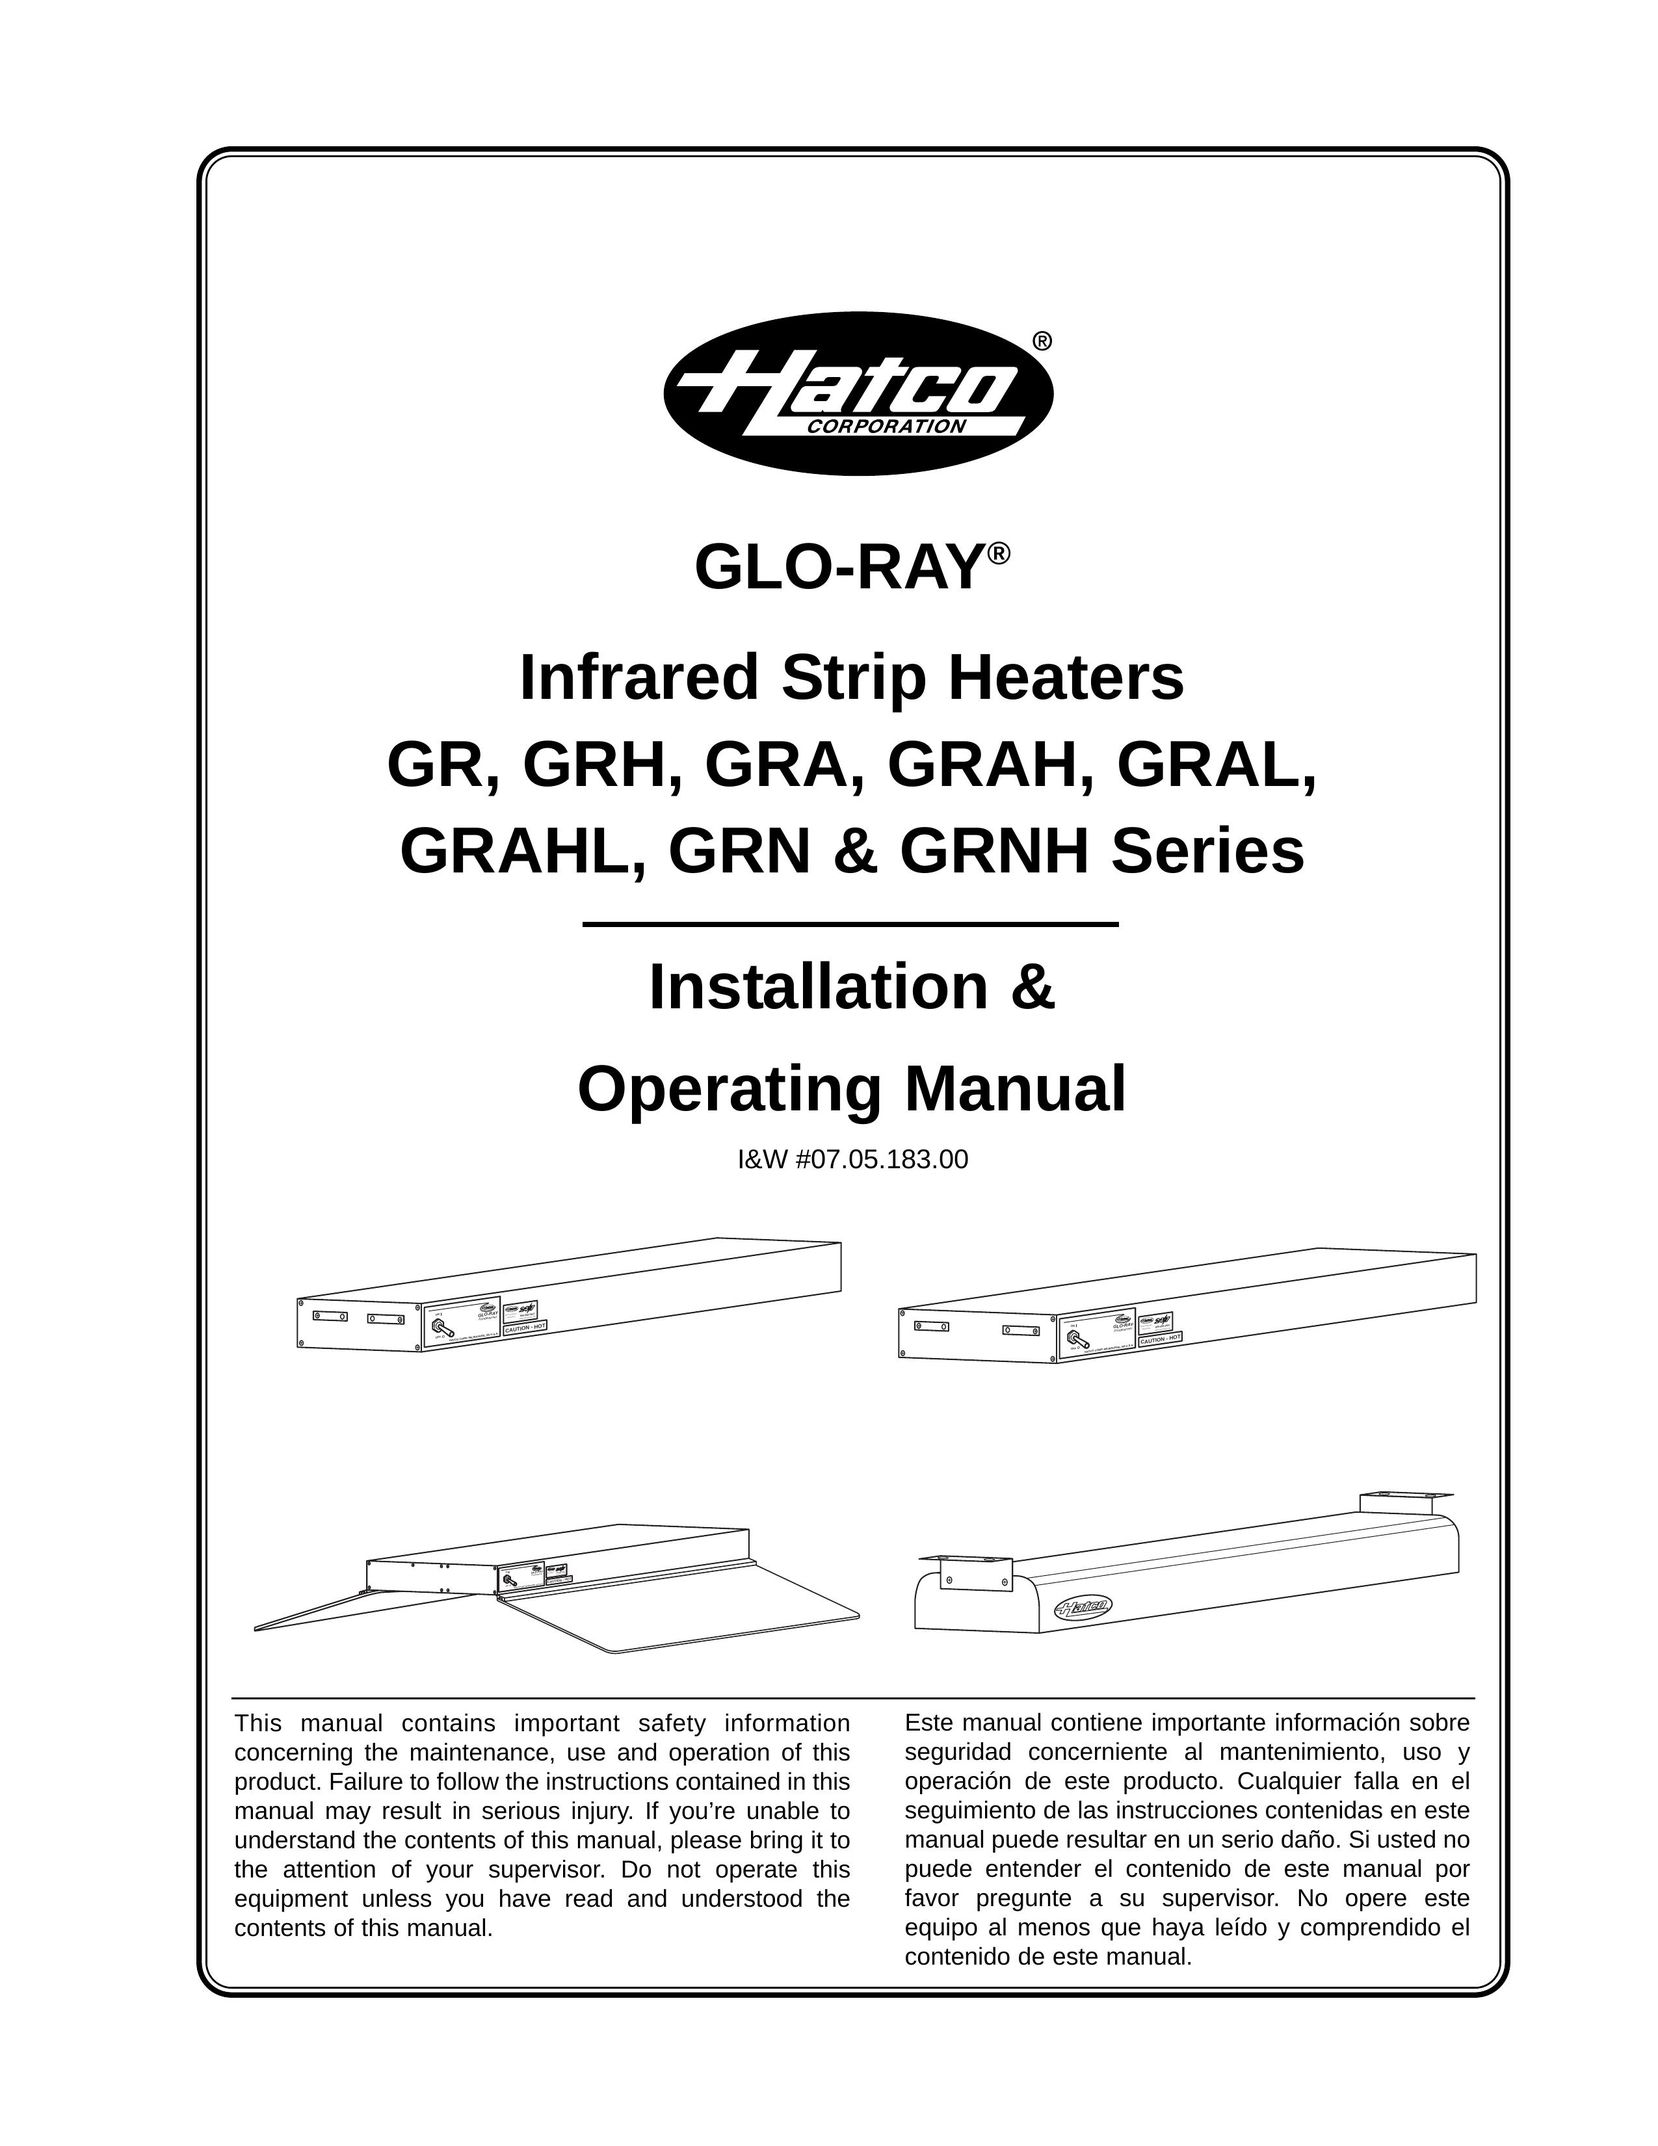 Hatco GRAH Printer Accessories User Manual